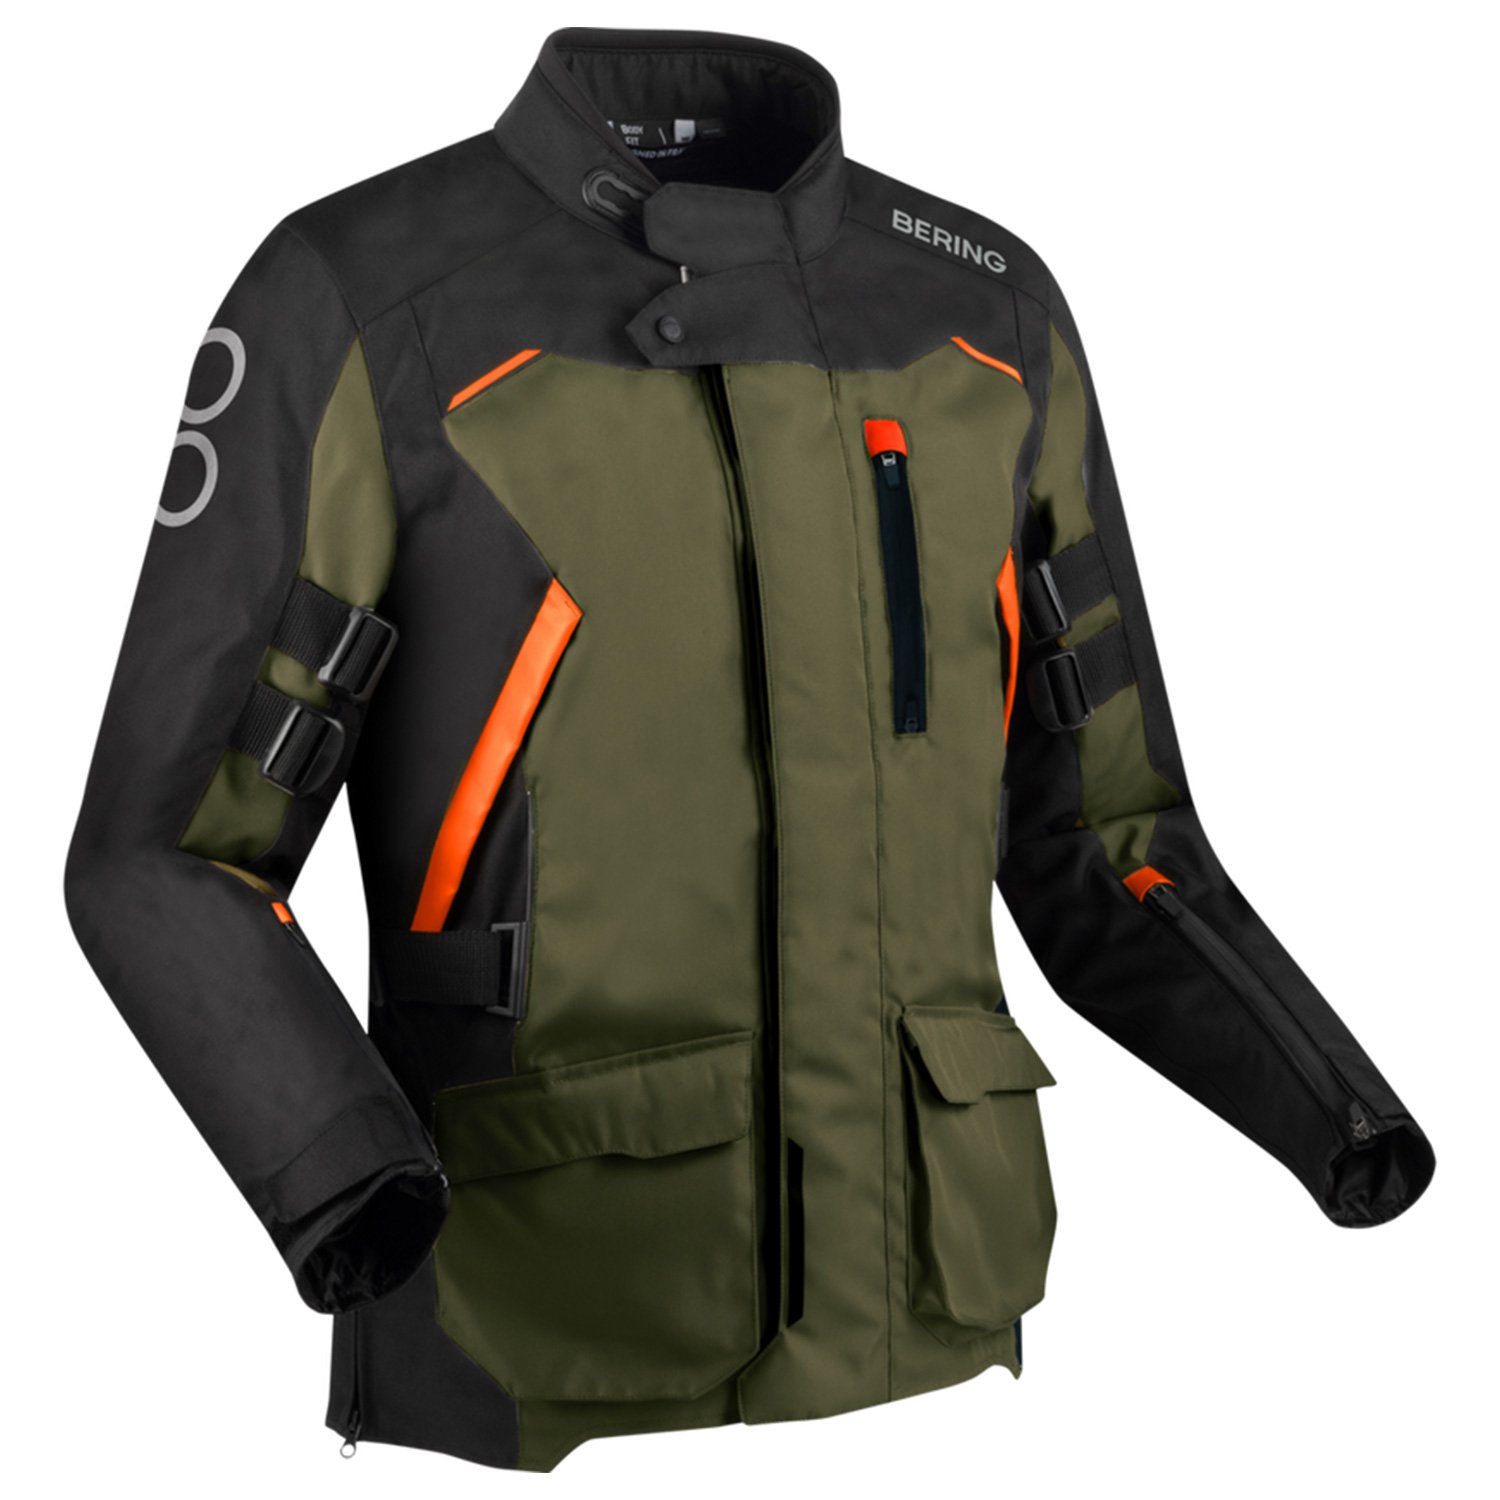 Image of Bering Zephyr Jacket Black Khaki Orange Size S ID 3660815181027